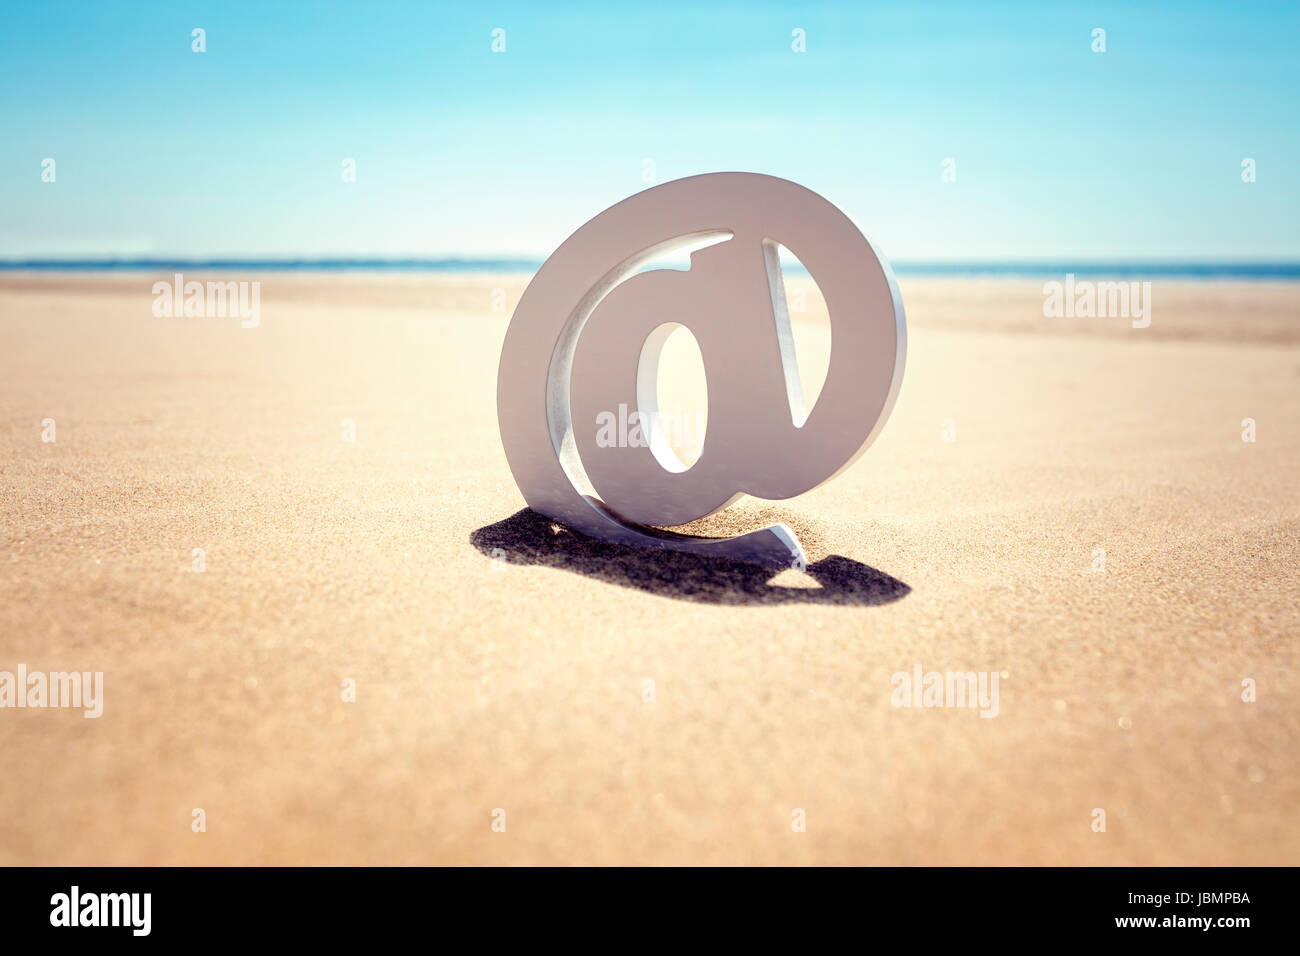 La posta elettronica al simbolo nella sabbia in spiaggia Foto Stock